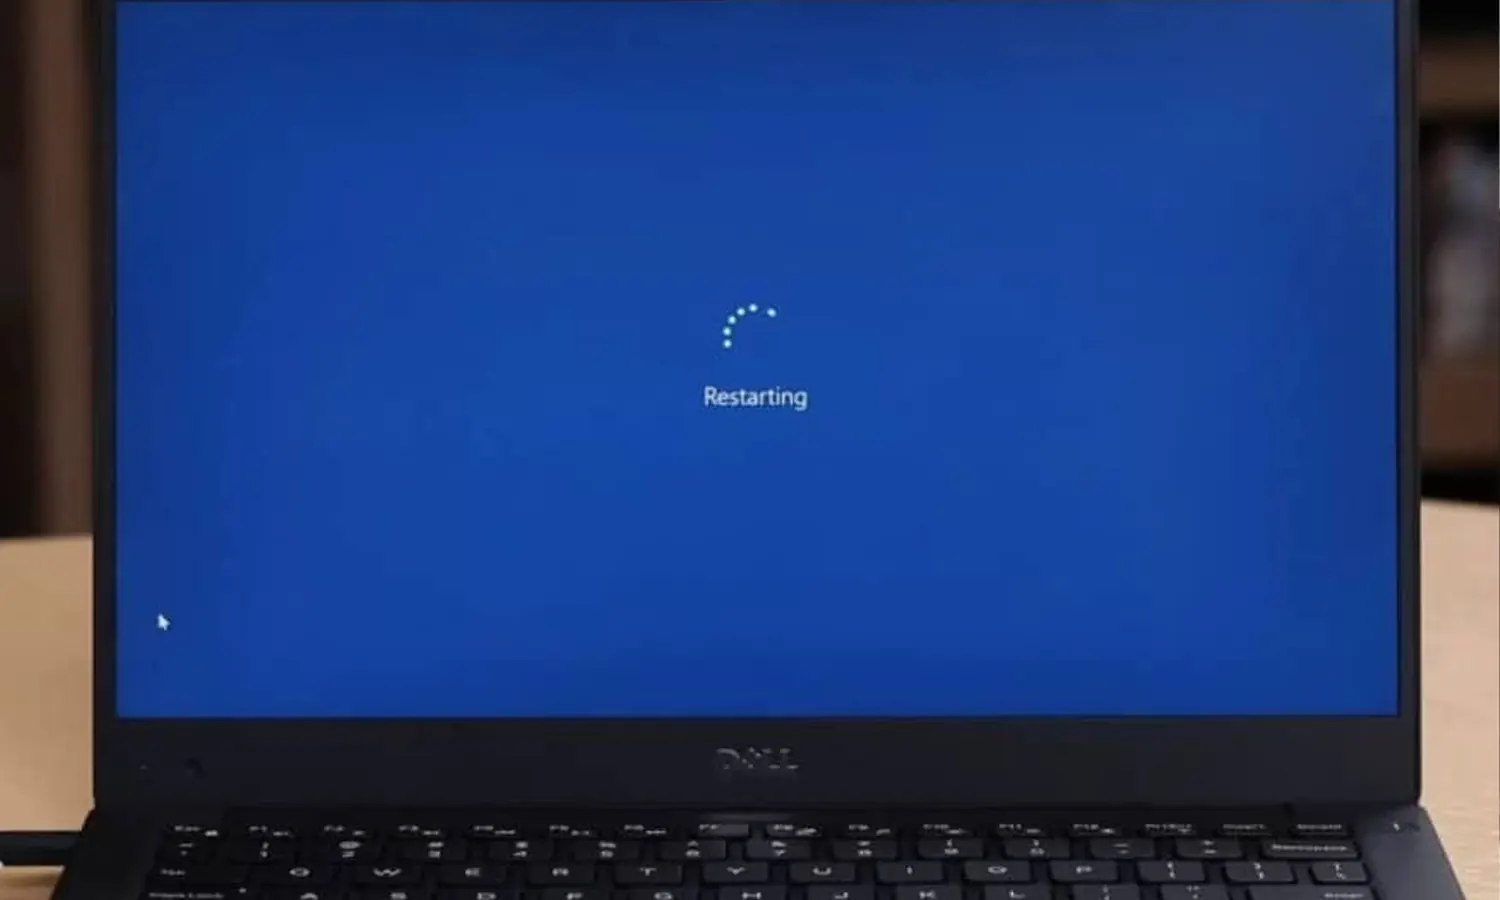 Restart Laptop